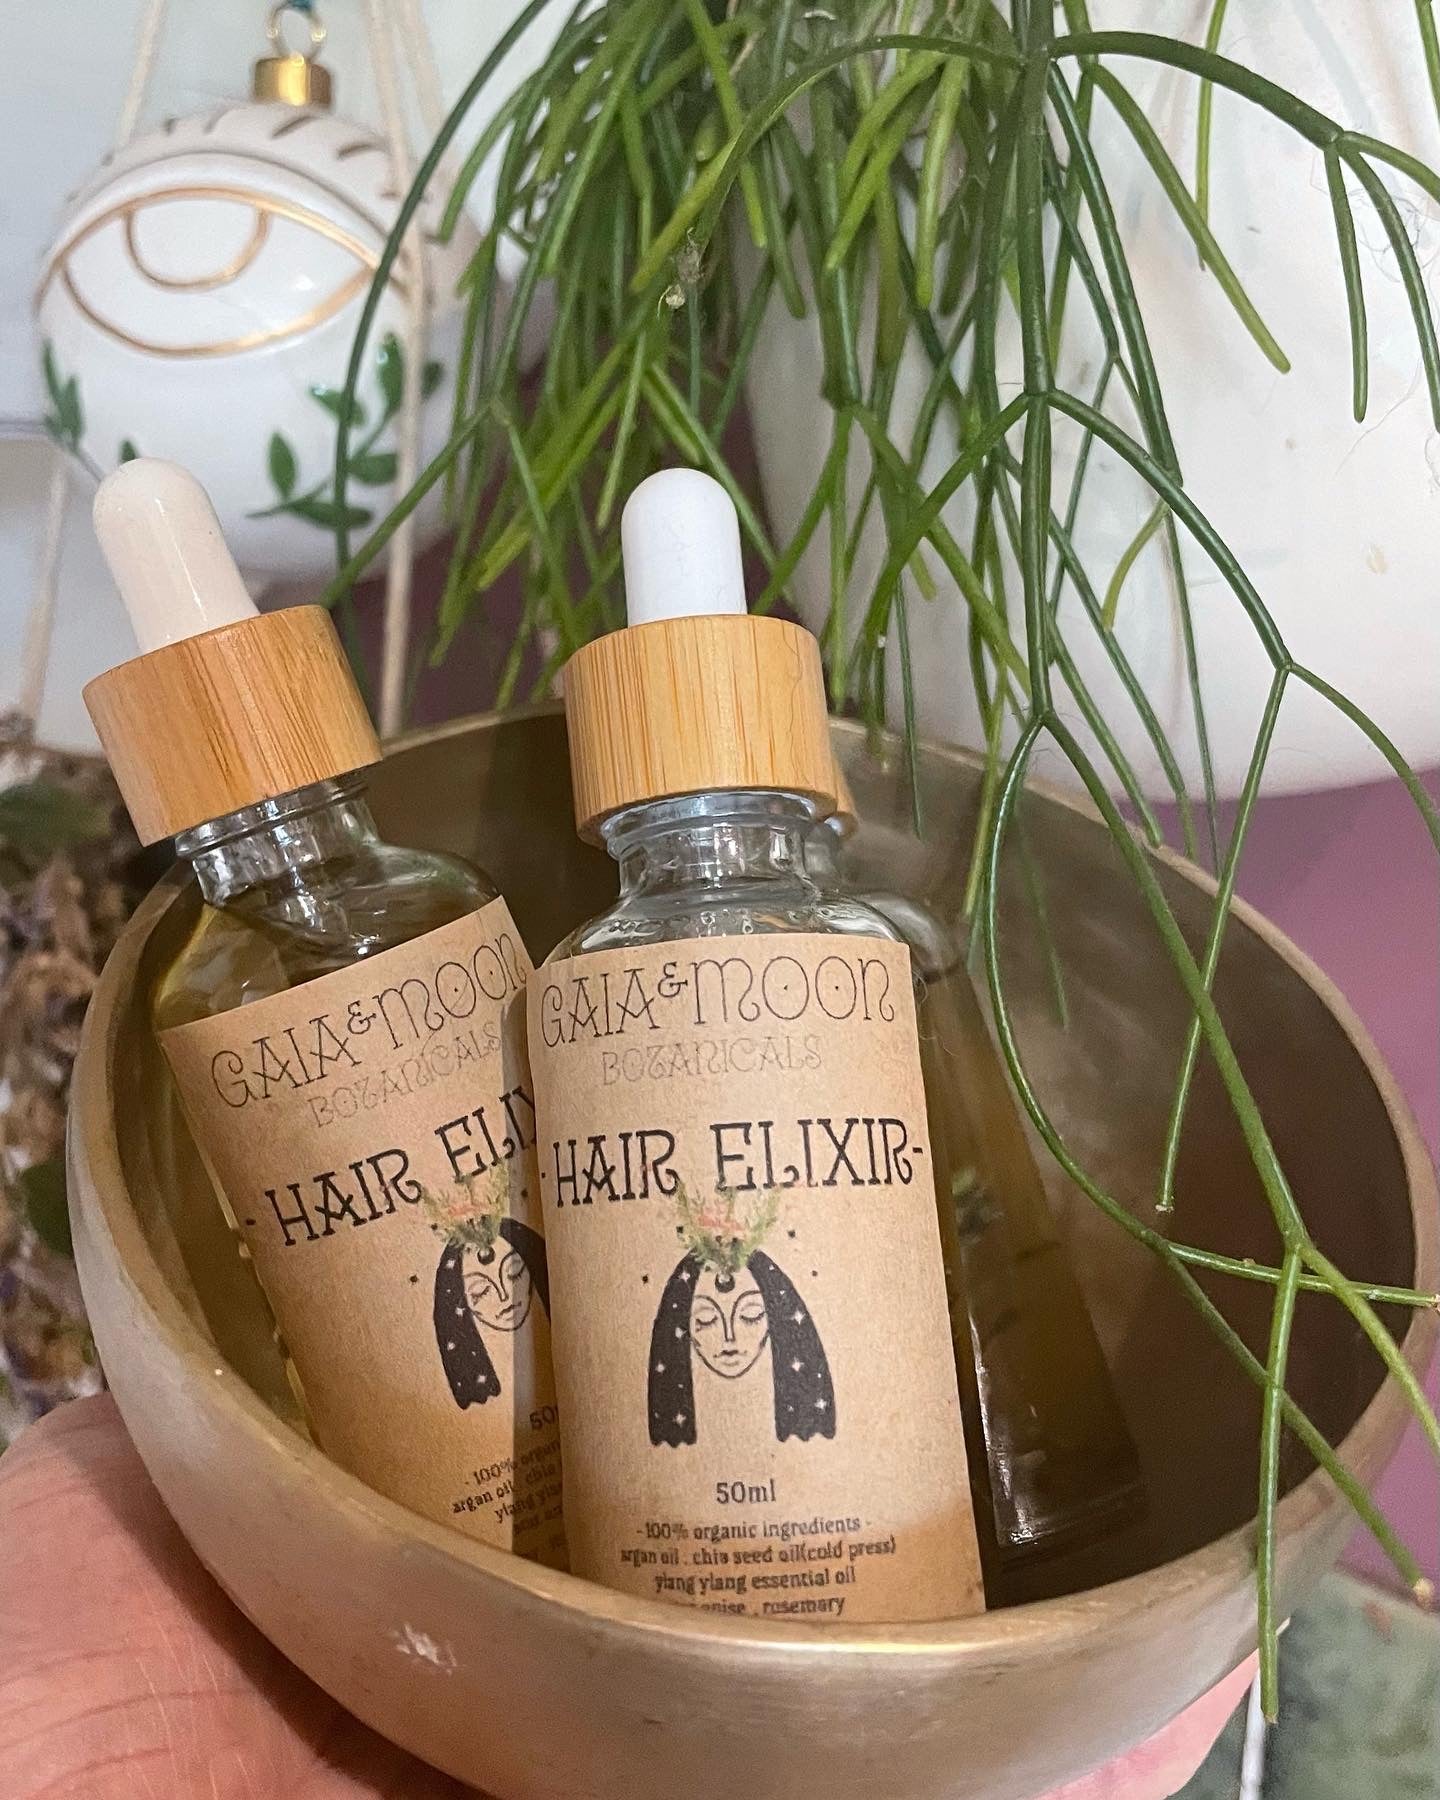 Botanical Infusions - Hair Elixir - Vegan Hair Oil Argan Blend Infused 50ml